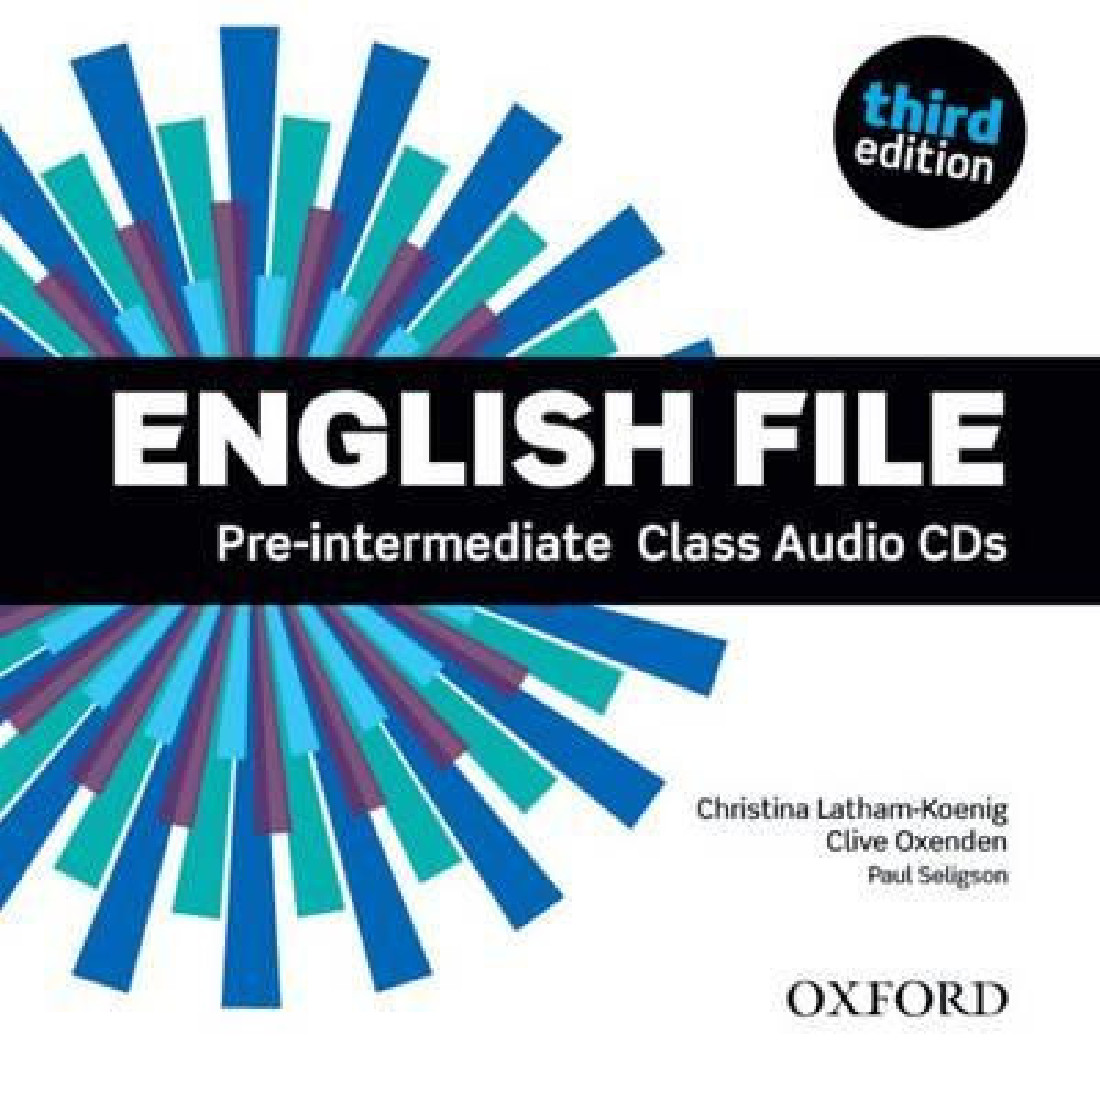 ENGLISH FILE 3RD EDITION PRE-INTERMEDIATE CDs